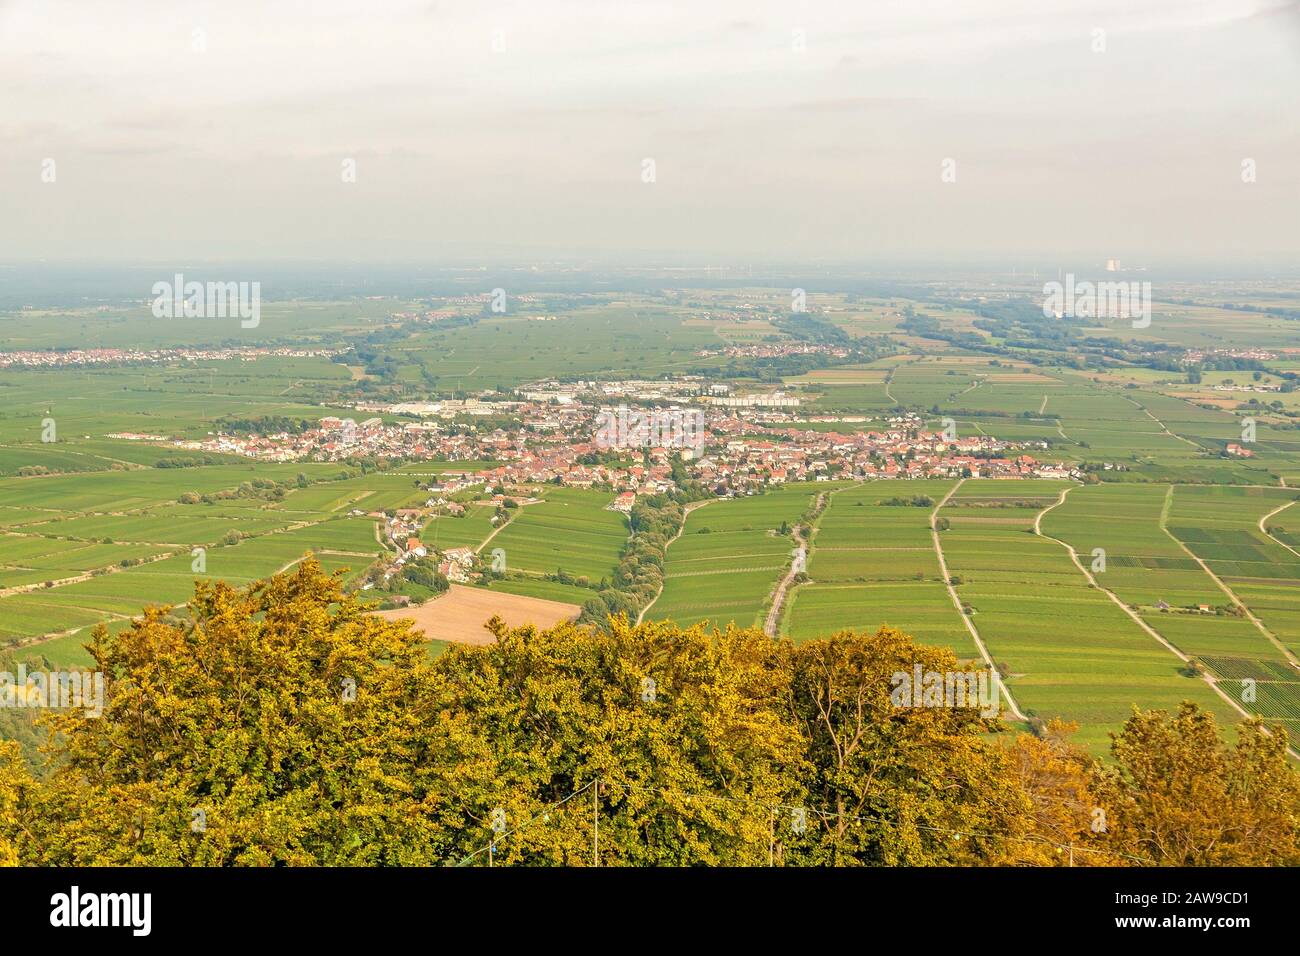 Region Suedliche Weinstrasse (southern wine route) - village named Edenkoben - aerial view from Rietburg ruin Stock Photo